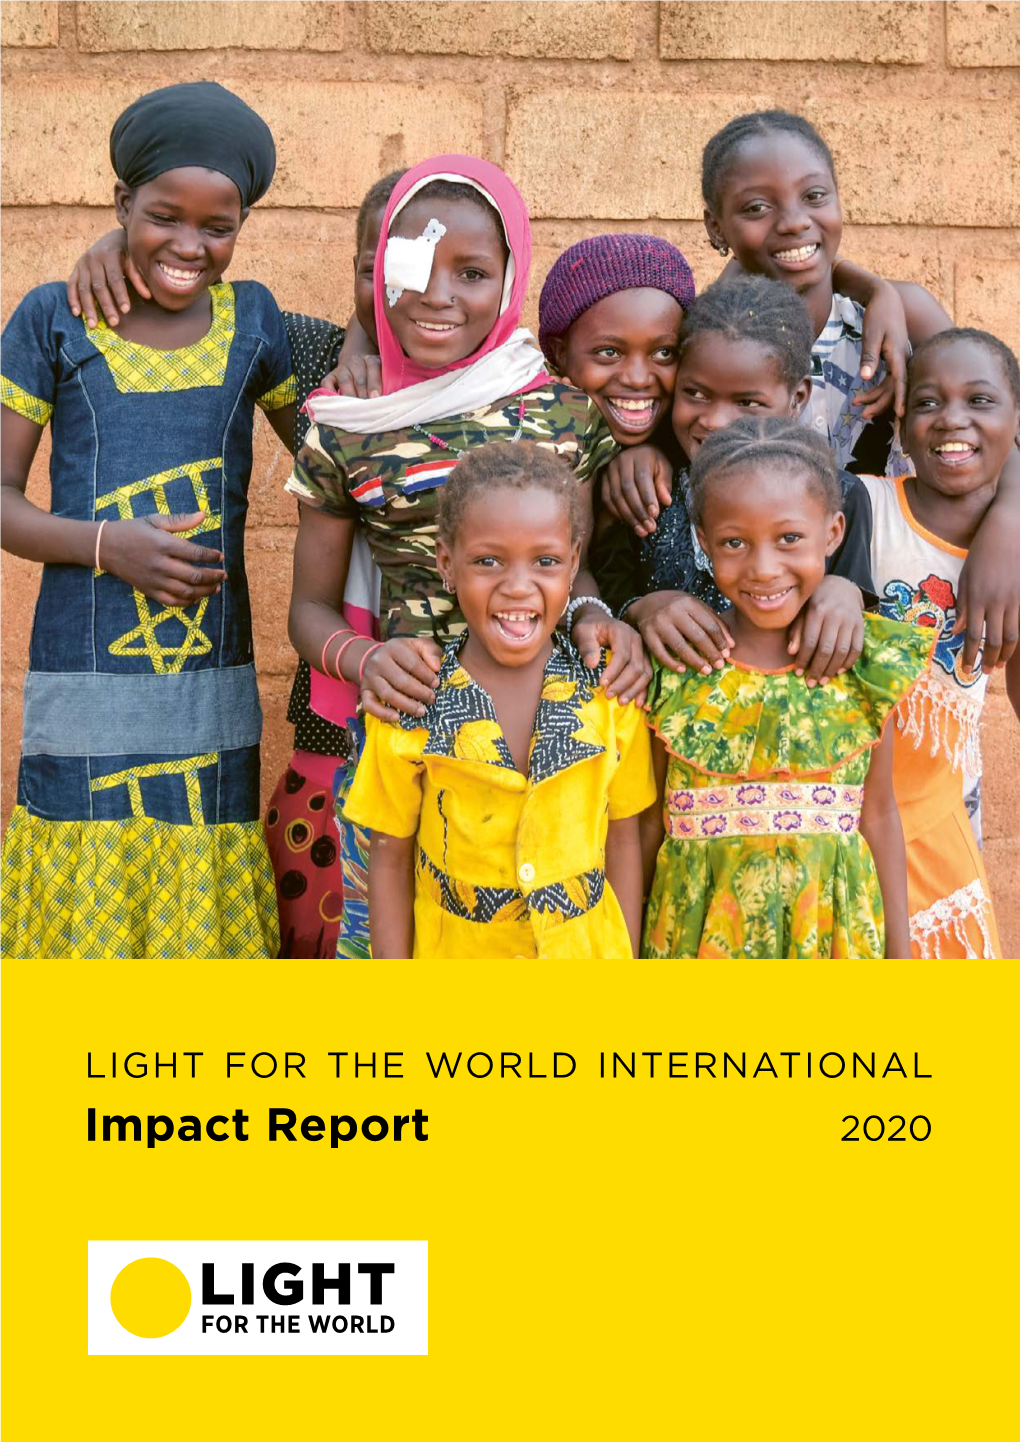 Impact Report 2020 Dear Friends